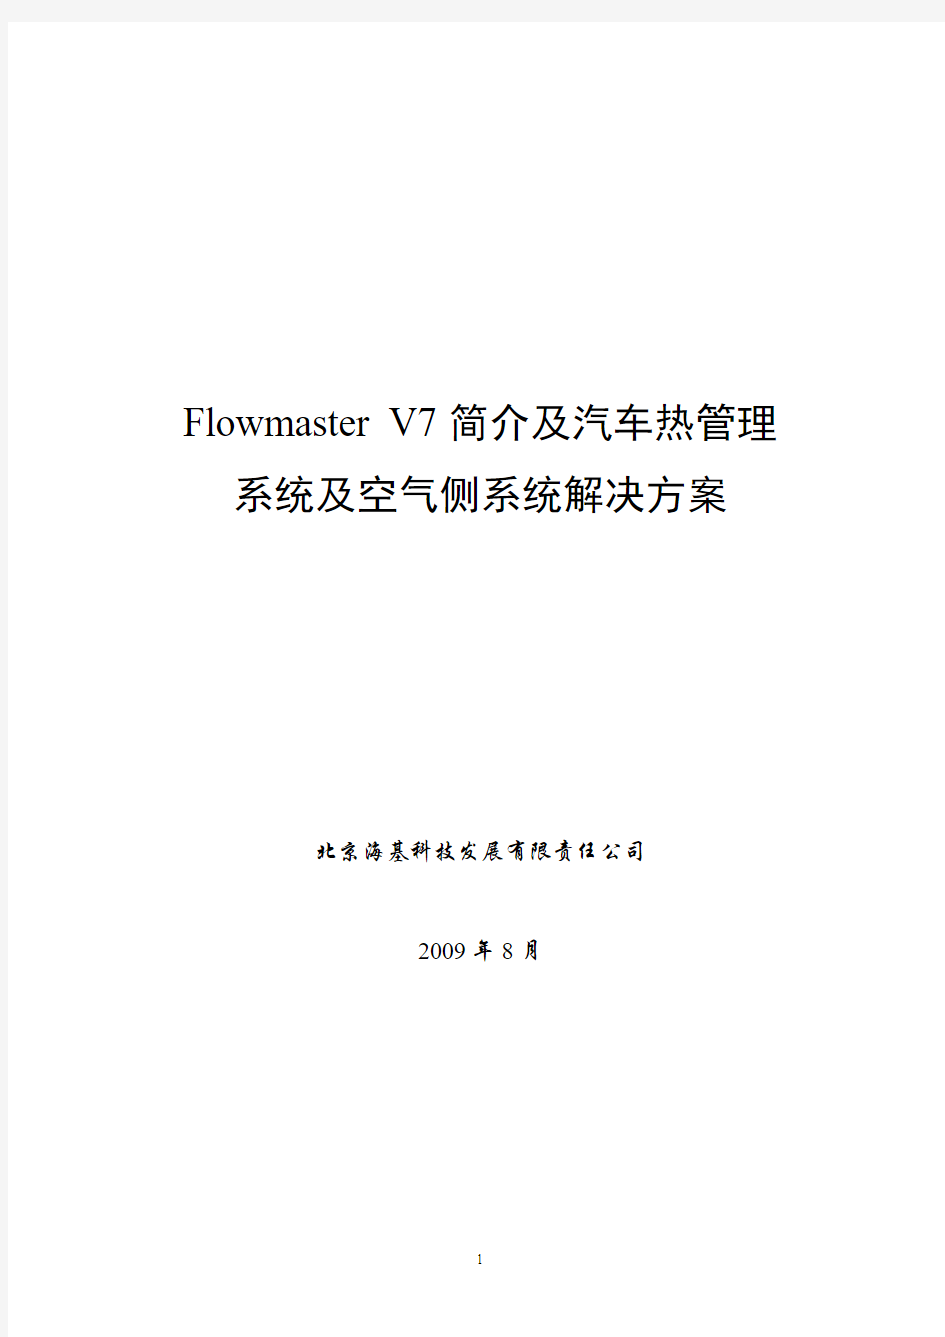 Flowmaster V7简介及汽车热管理系统和空气侧系统解决方案